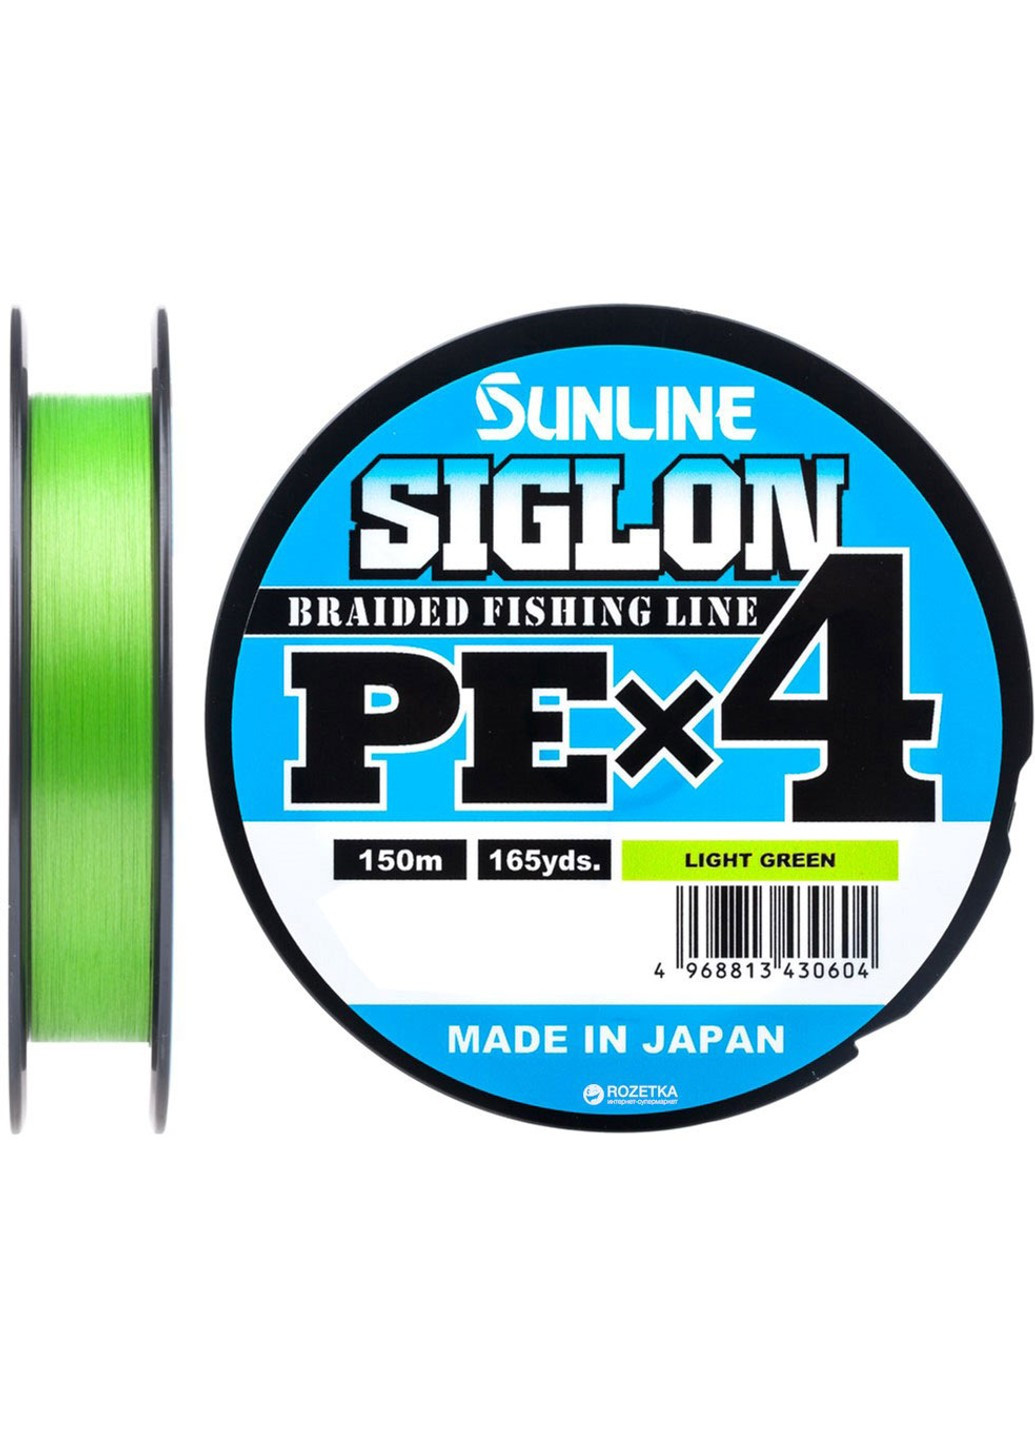 Шнур Siglon PE х4 150m (салат.) #0.6/0.132mm 10lb/4.5kg (1658-09-04) Sunline (252468200)